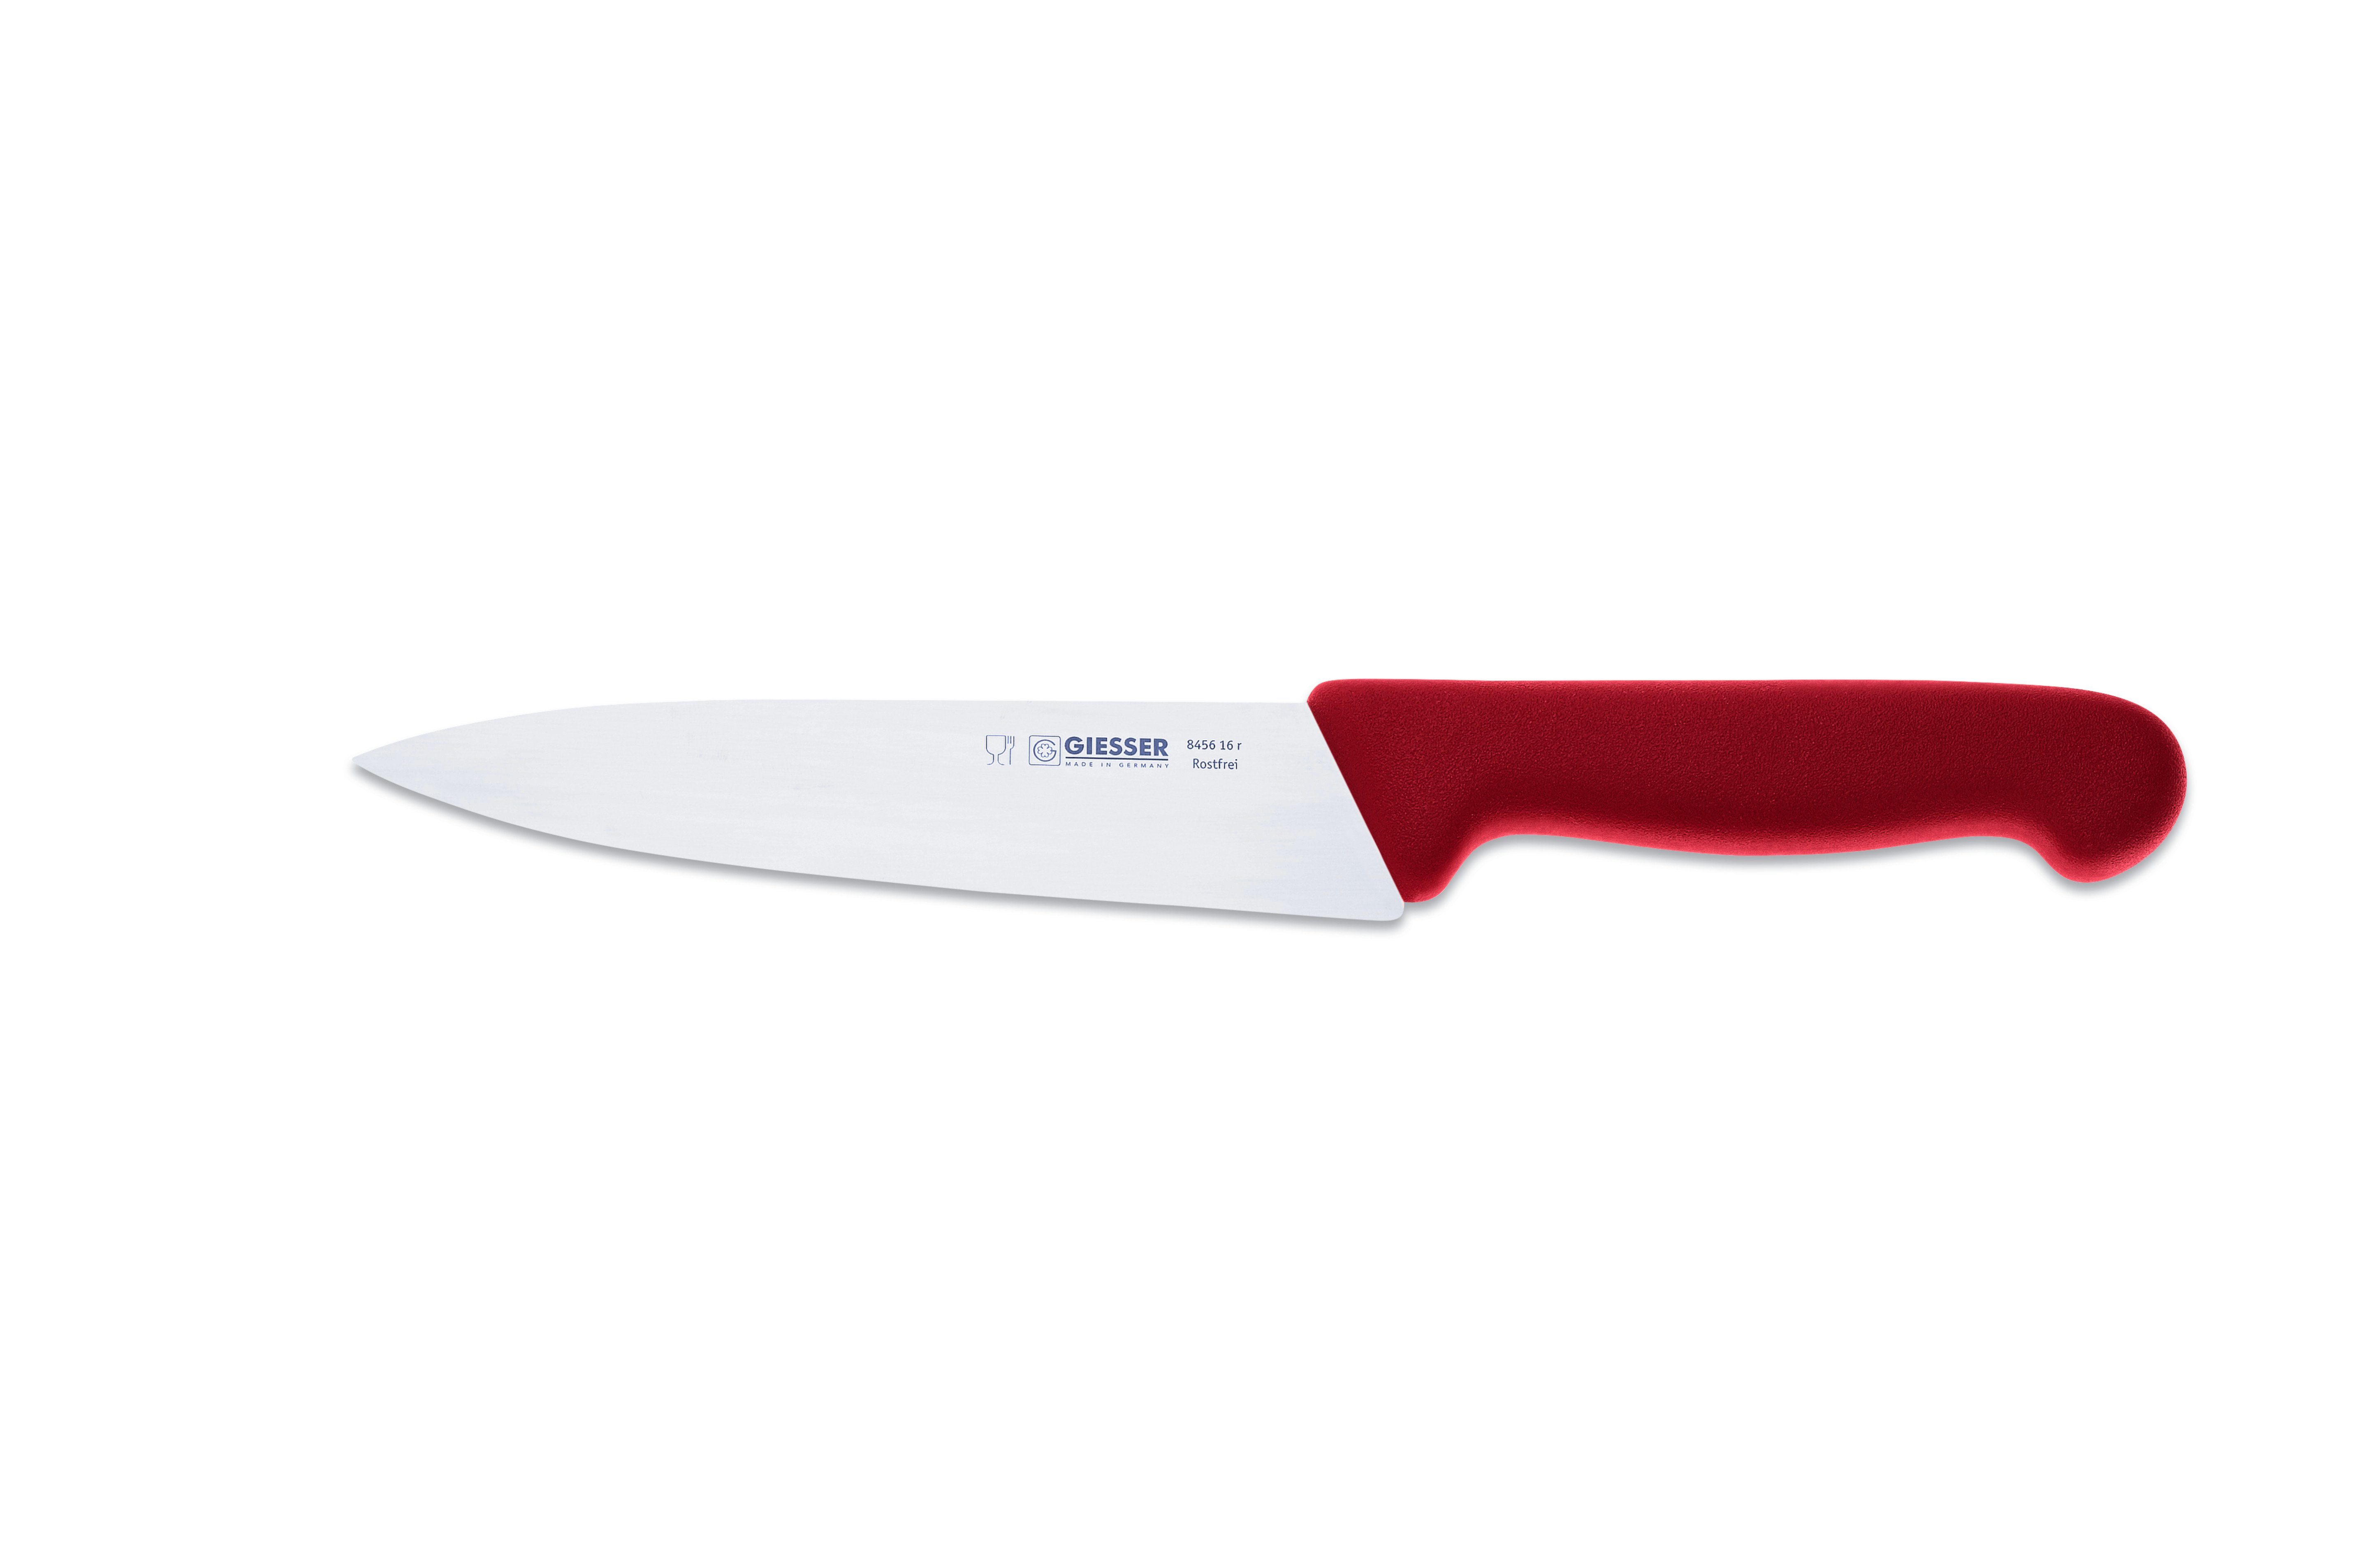 Giesser Messer Kochmesser jede mittelspitze scharf Ideal 8456, für Küche Handabzug, Küchenmesser schmale, rot Klinge